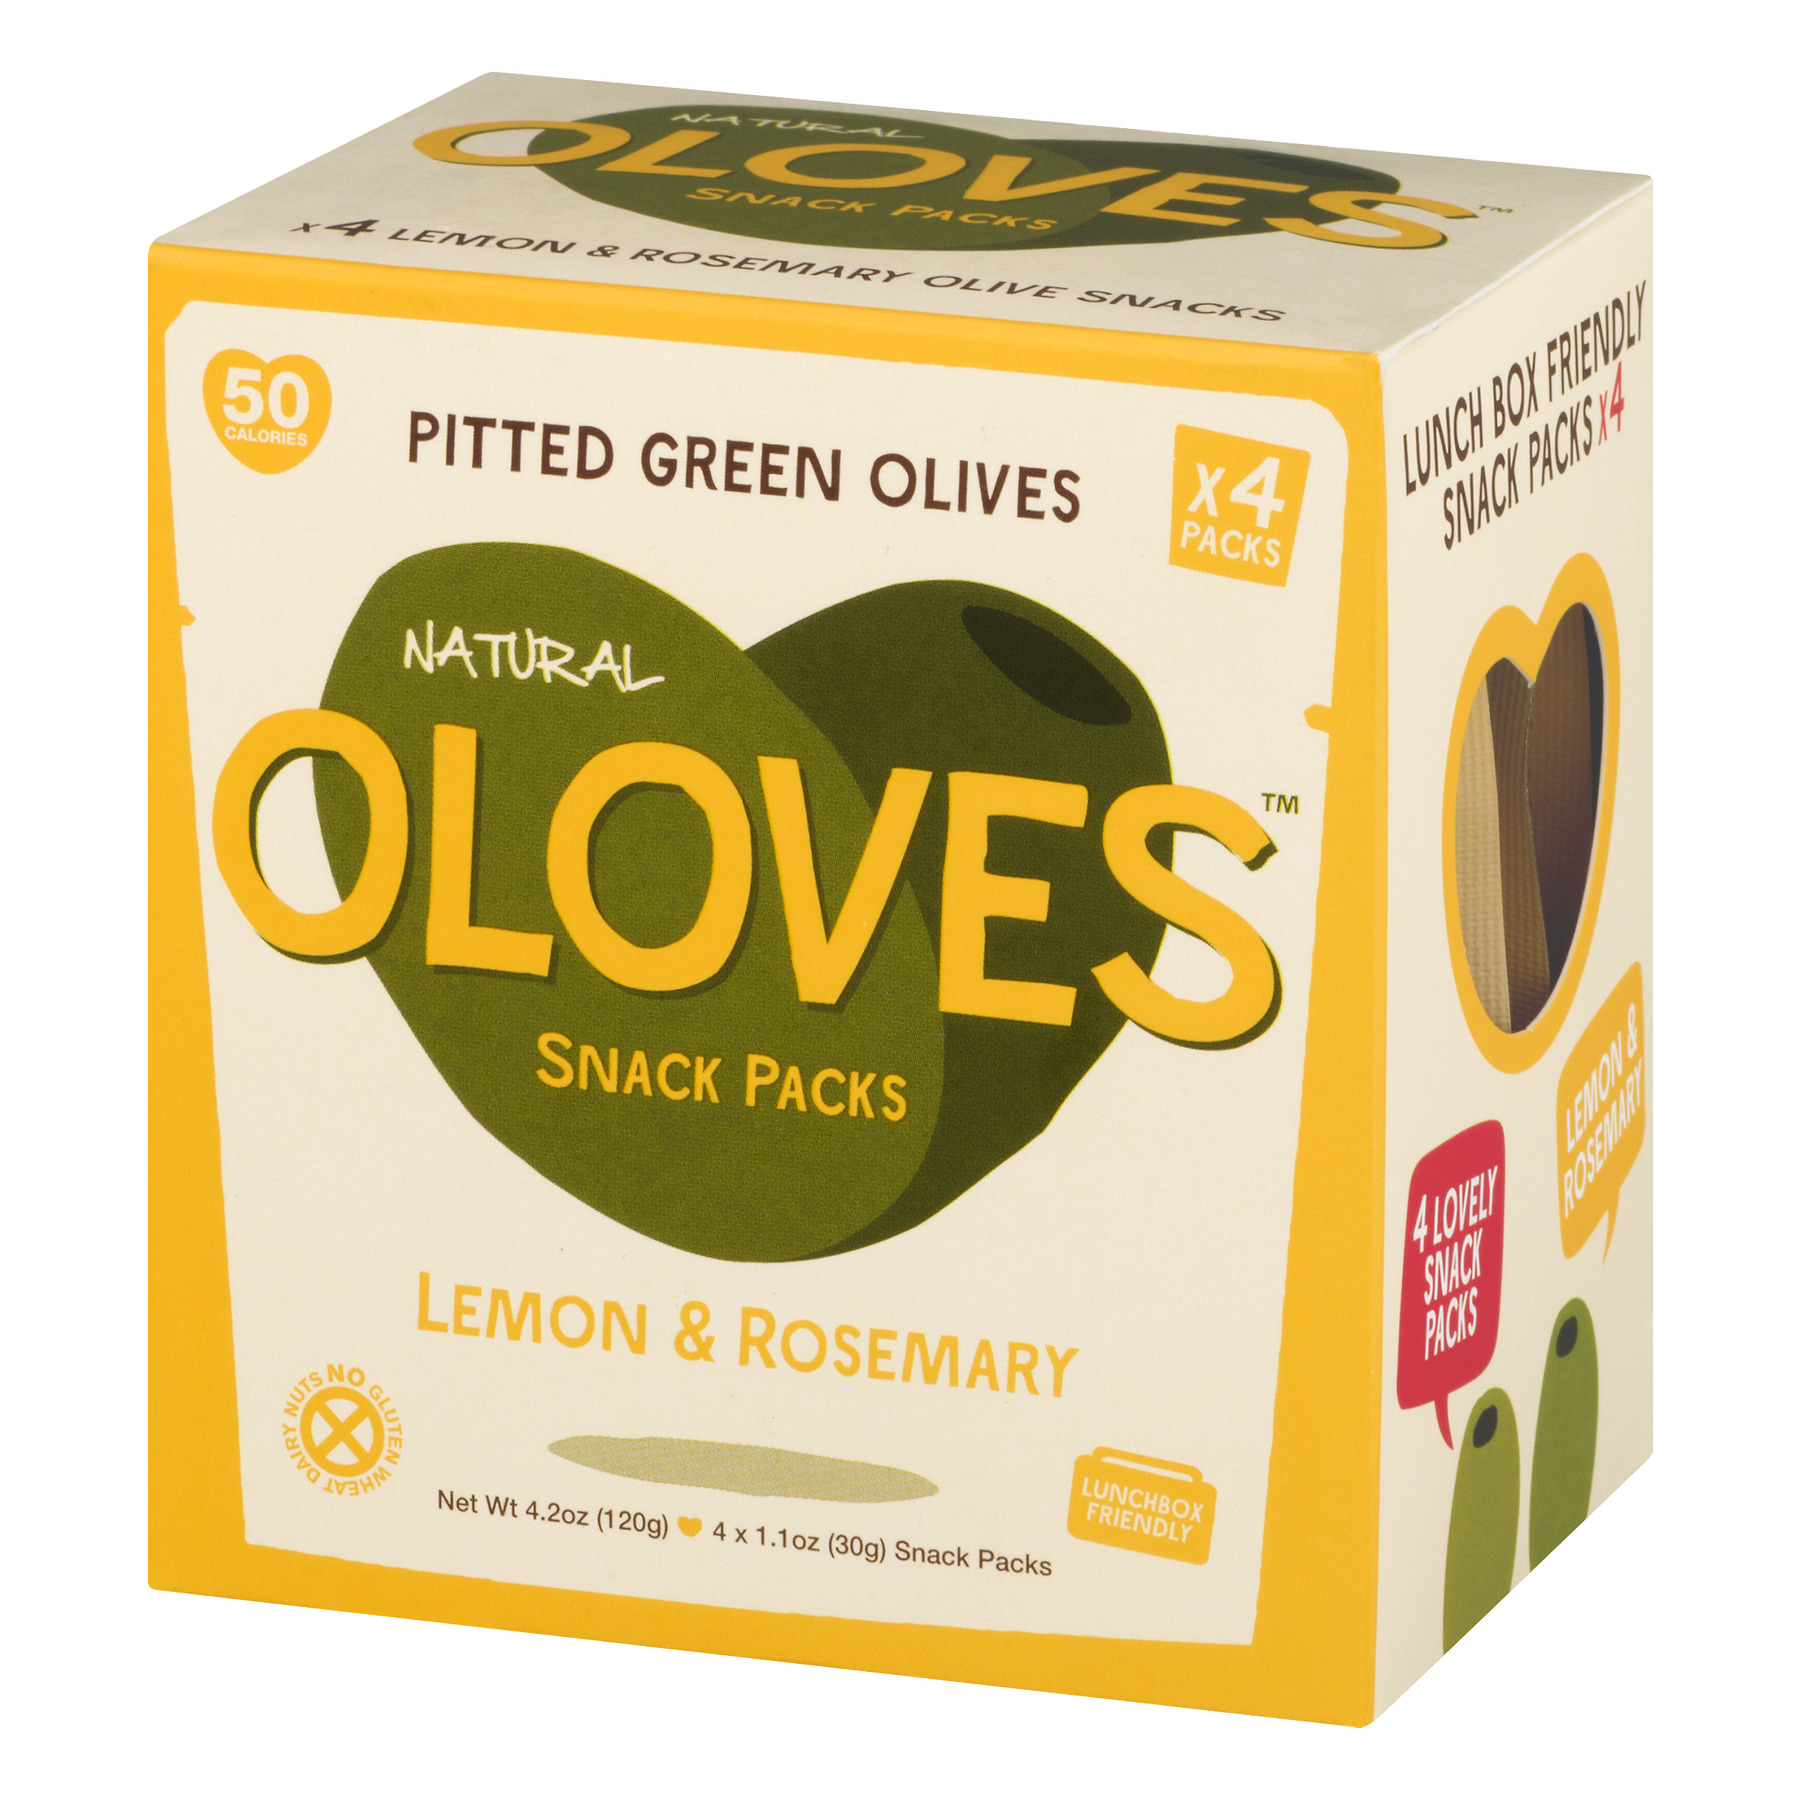 Oloves Pitted Green Olives Snack Packs Lemon & Rosemary - 4 CT1.1 OZ - image 3 of 6